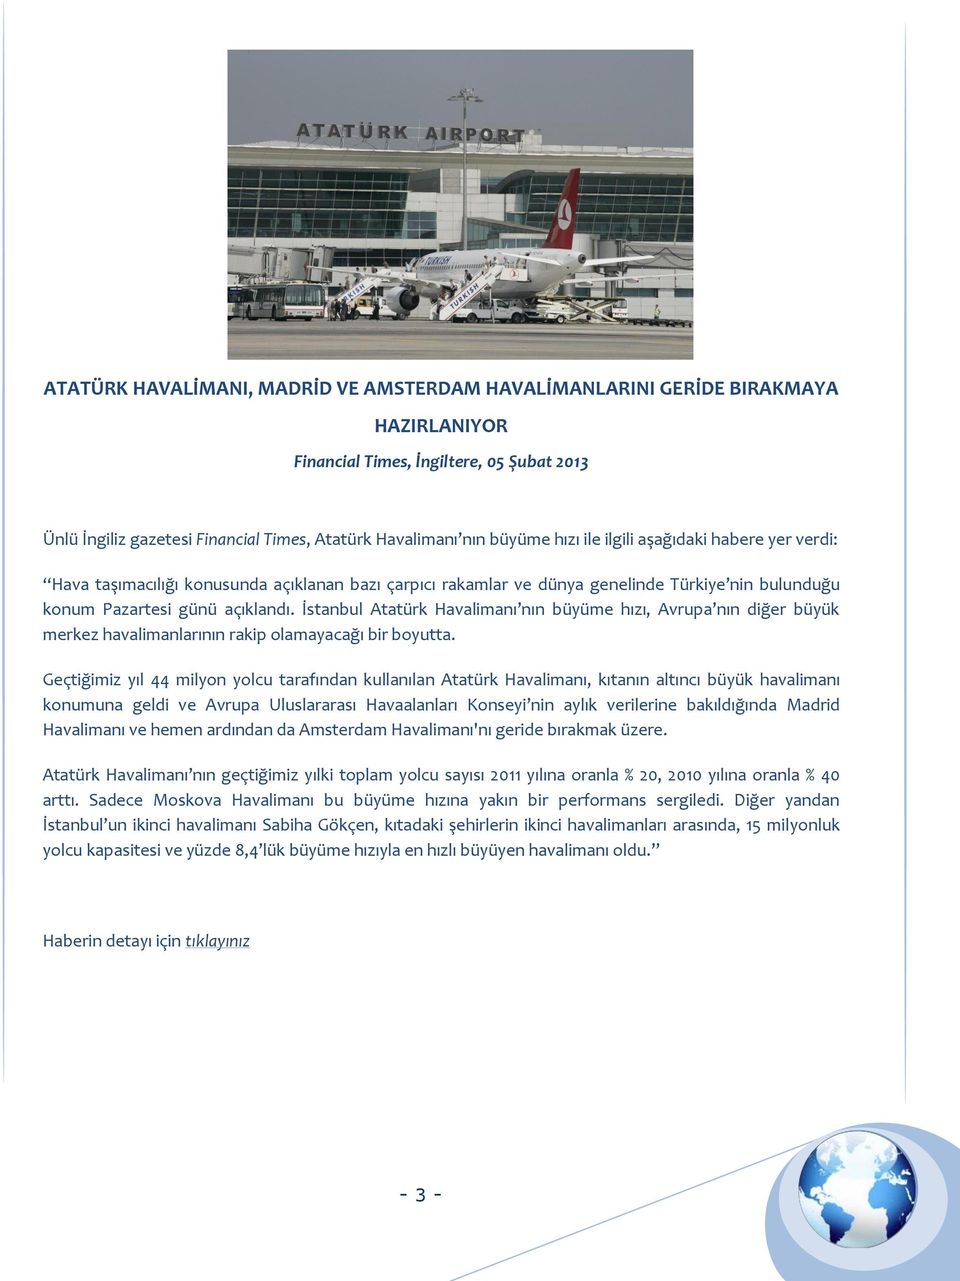 İstanbul Atatürk Havalimanı nın büyüme hızı, Avrupa nın diğer büyük merkez havalimanlarının rakip olamayacağı bir boyutta.